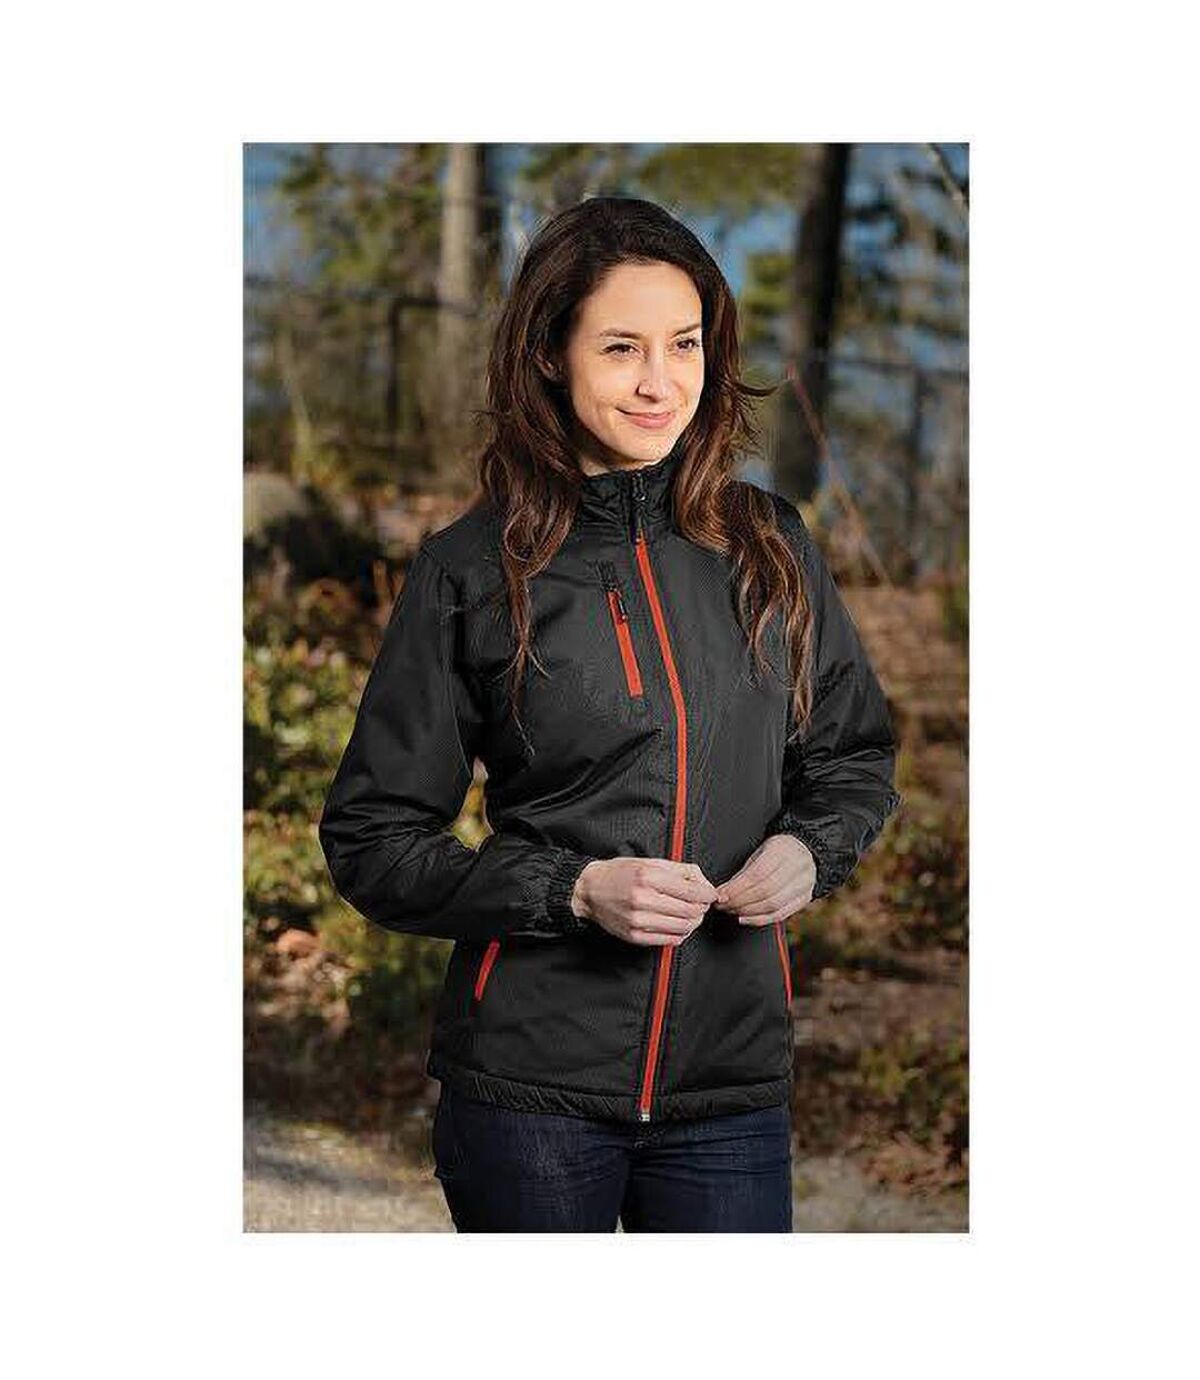 Stormtech Ladies/Womens Axis Water Resistant Jacket (Black/Orange) - UTBC2080